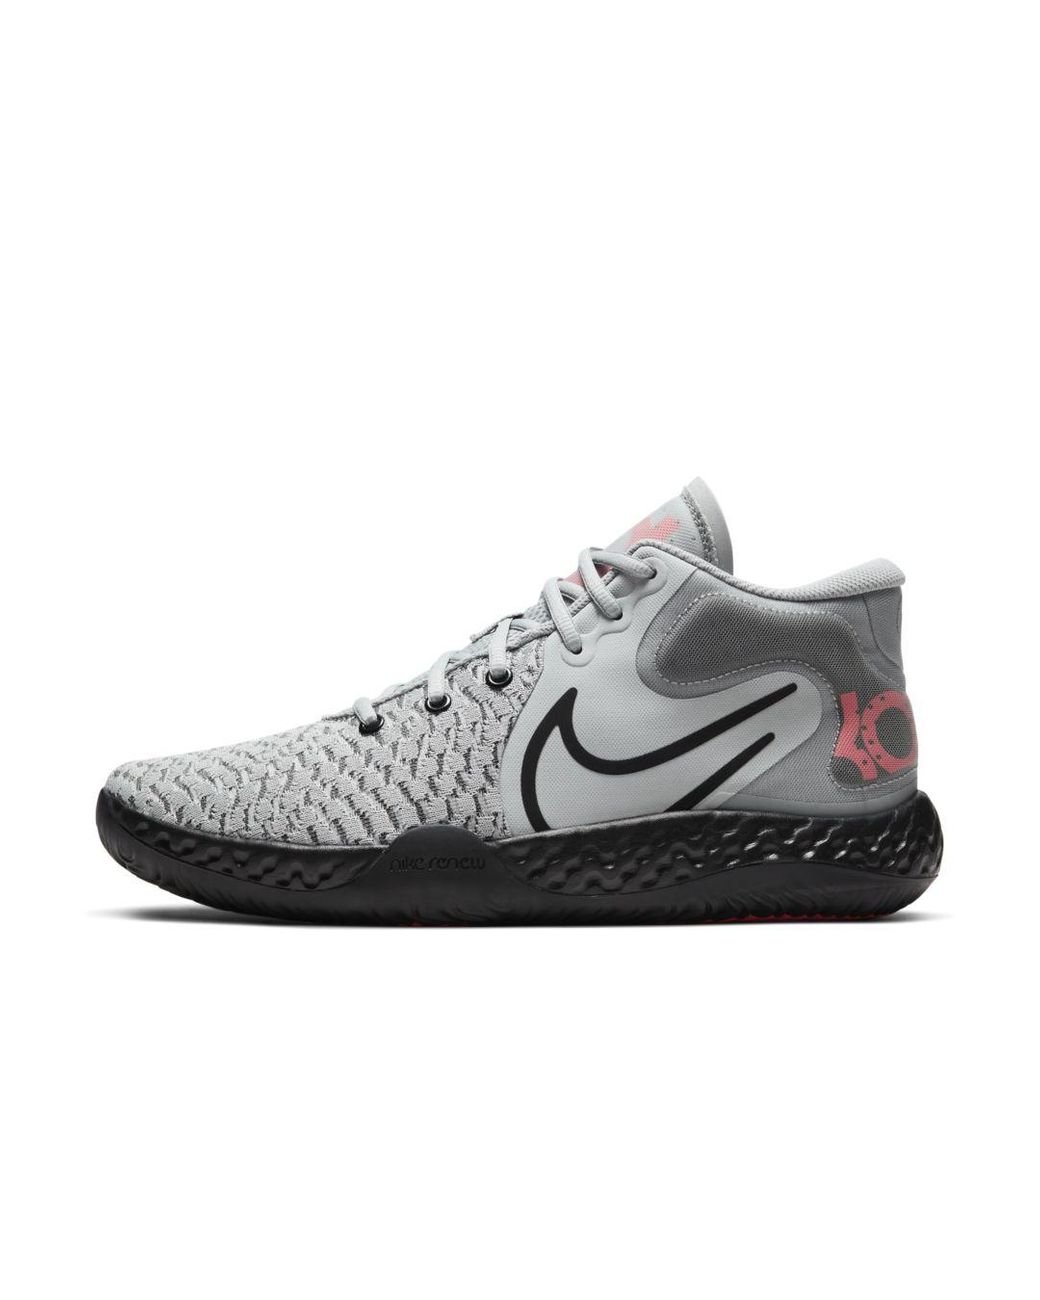 Nike kd trey 5 low Rubber Kd Trey 5 Viii Basketball Shoe in Grey (Gray) for Men